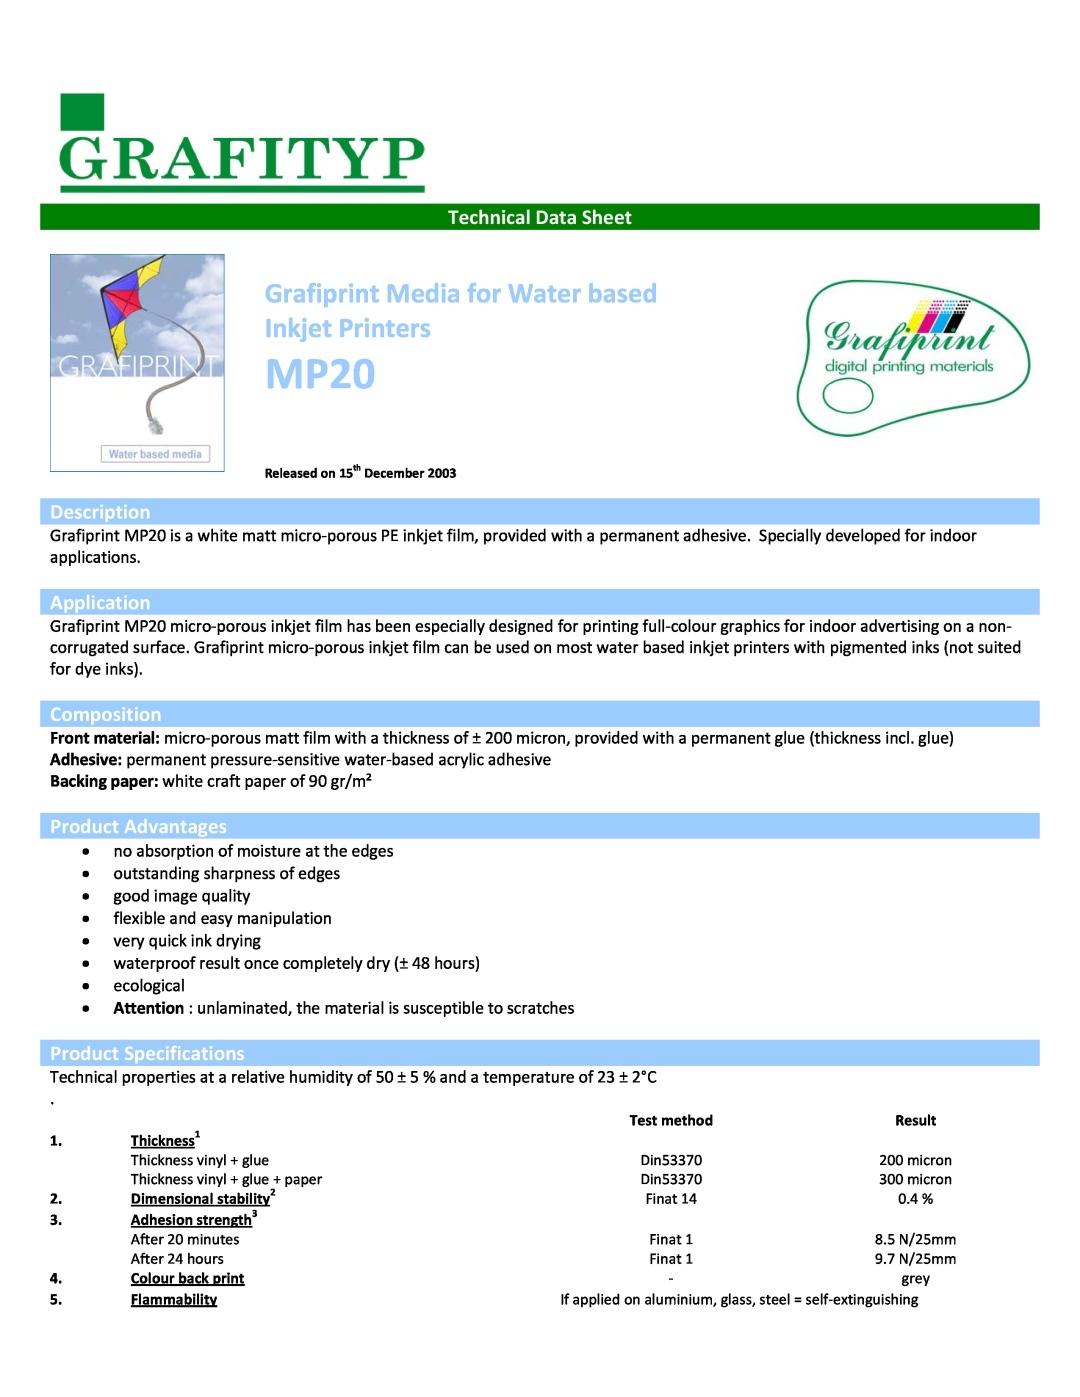 Epson MP20 specifications Technical Data Sheet, Description, Application, Composition, Product Advantages 